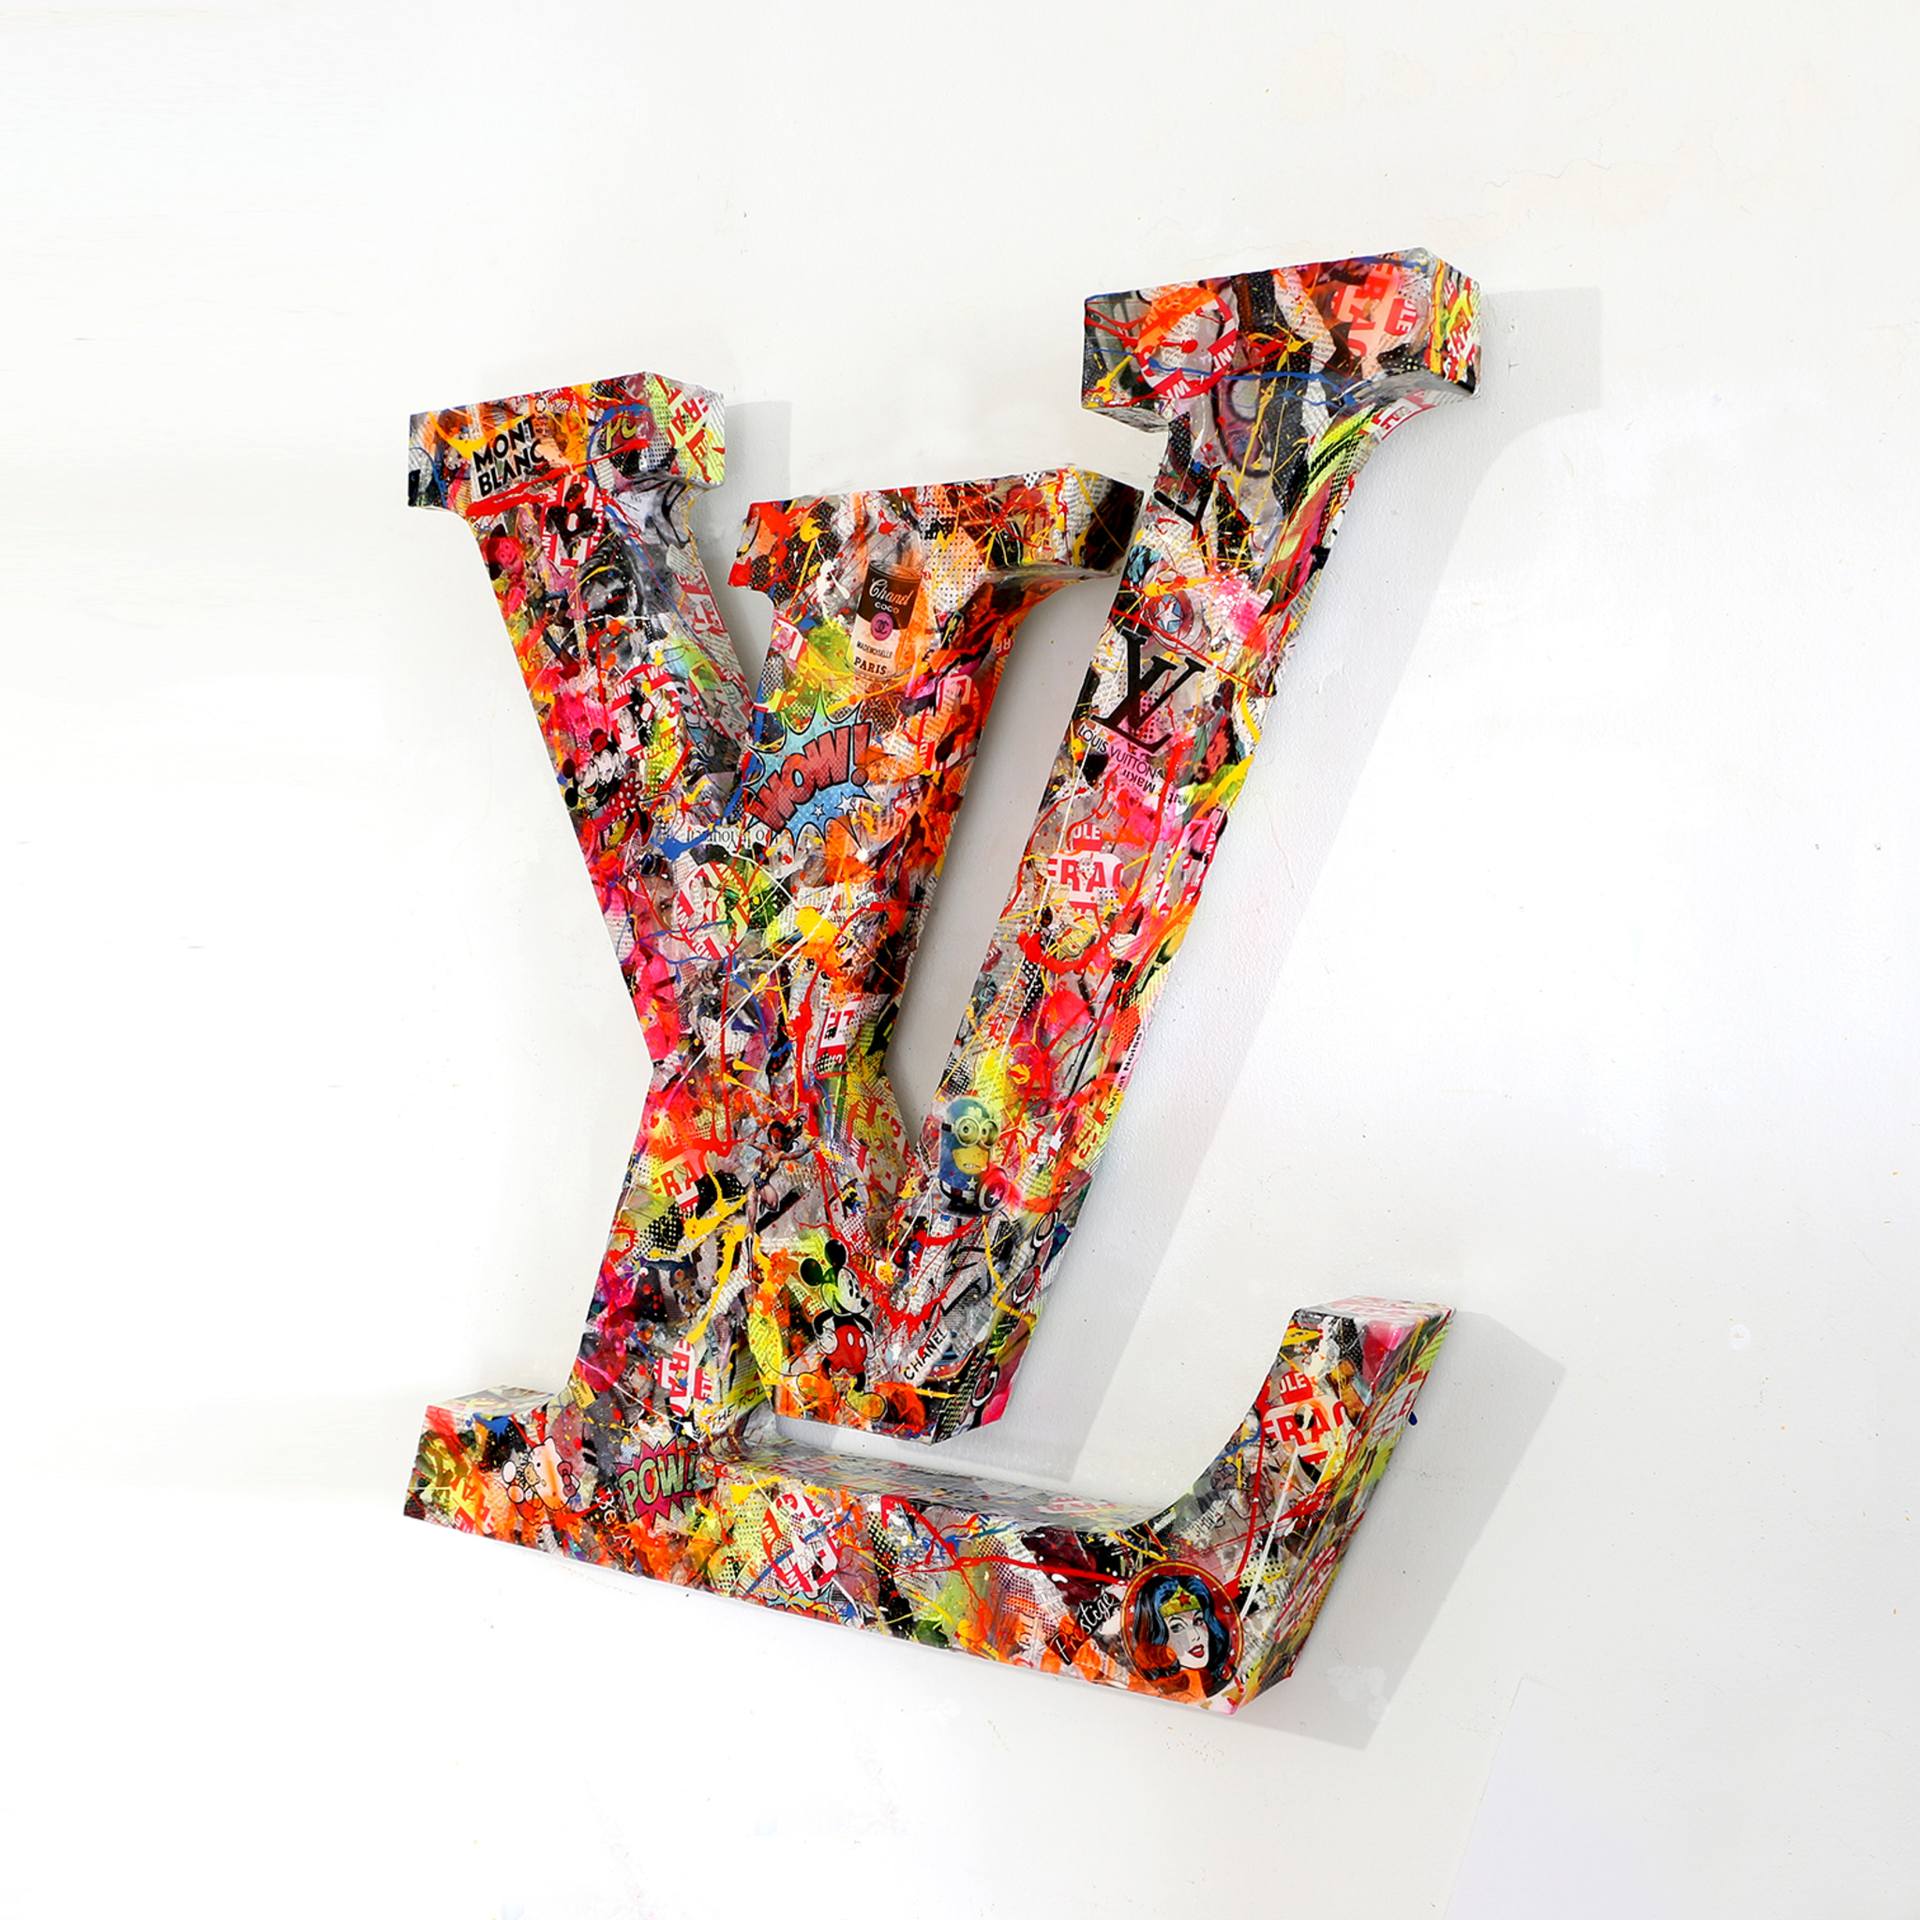 Louis Vuitton Wow - Sculpture Sculpture by GARDANI ART